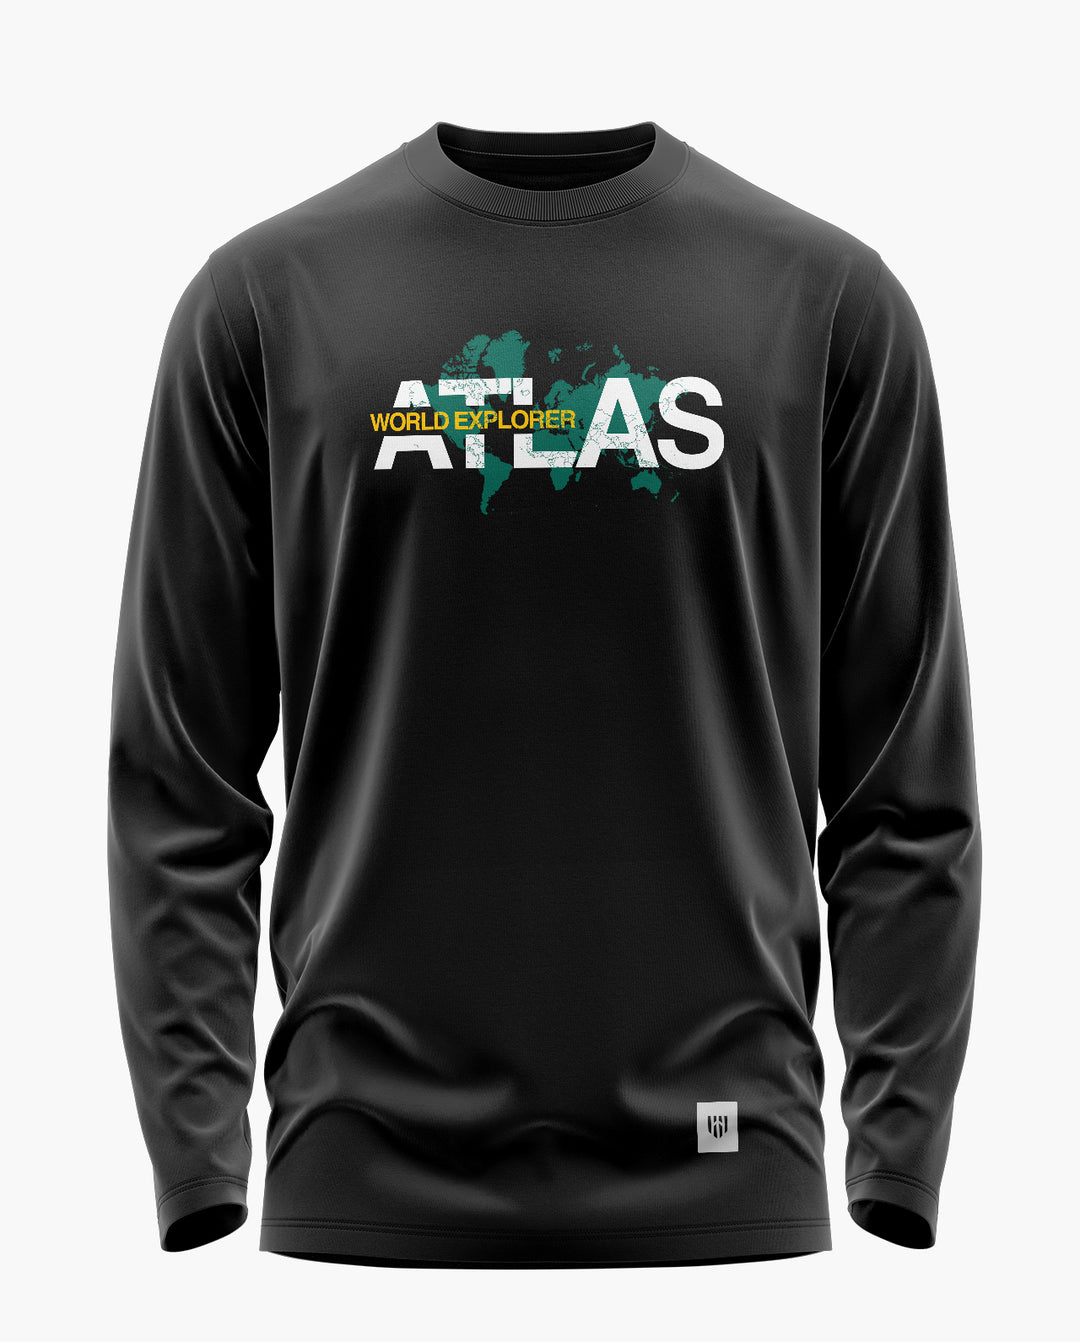 WORLD ATLAS EXPLORER Full Sleeve T-Shirt